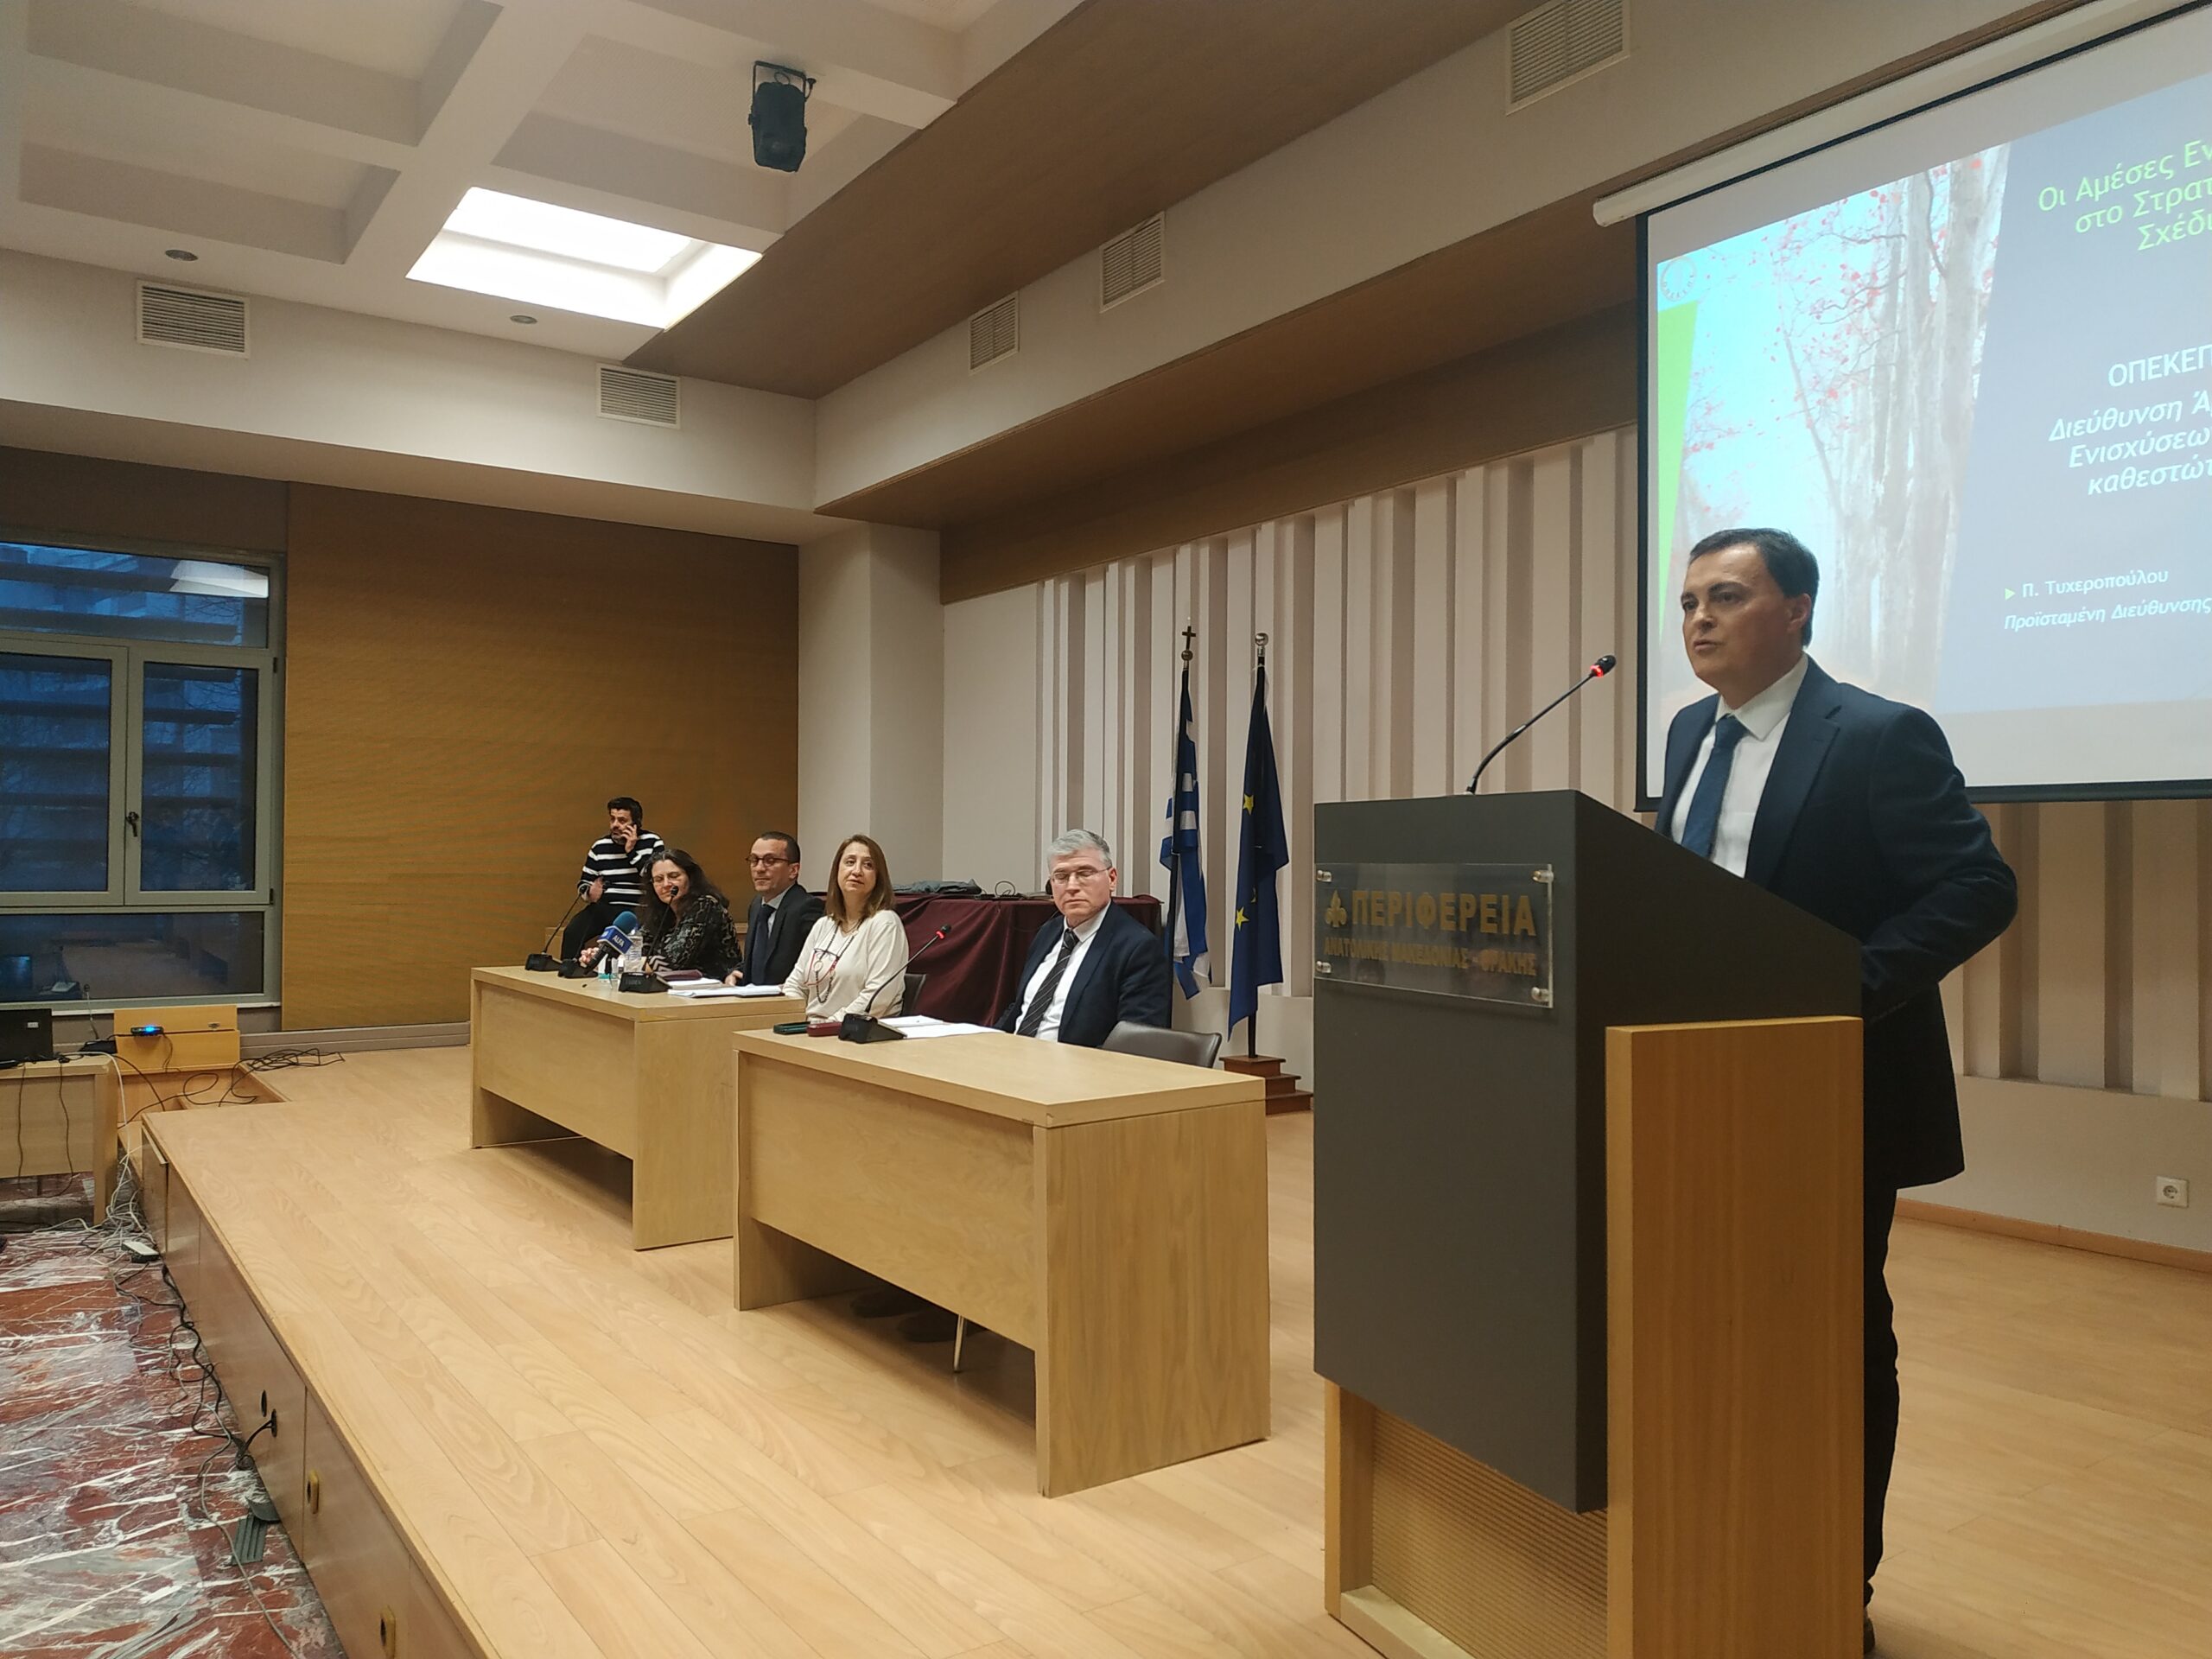 Τα νέα δεδομένα της Κοινής Γεωργικής Πολιτικής αναλύθηκαν στην κατάμεστη αίθουσα “Γεώργιος Παυλίδης” από τον ΟΠΕΚΕΠΕ